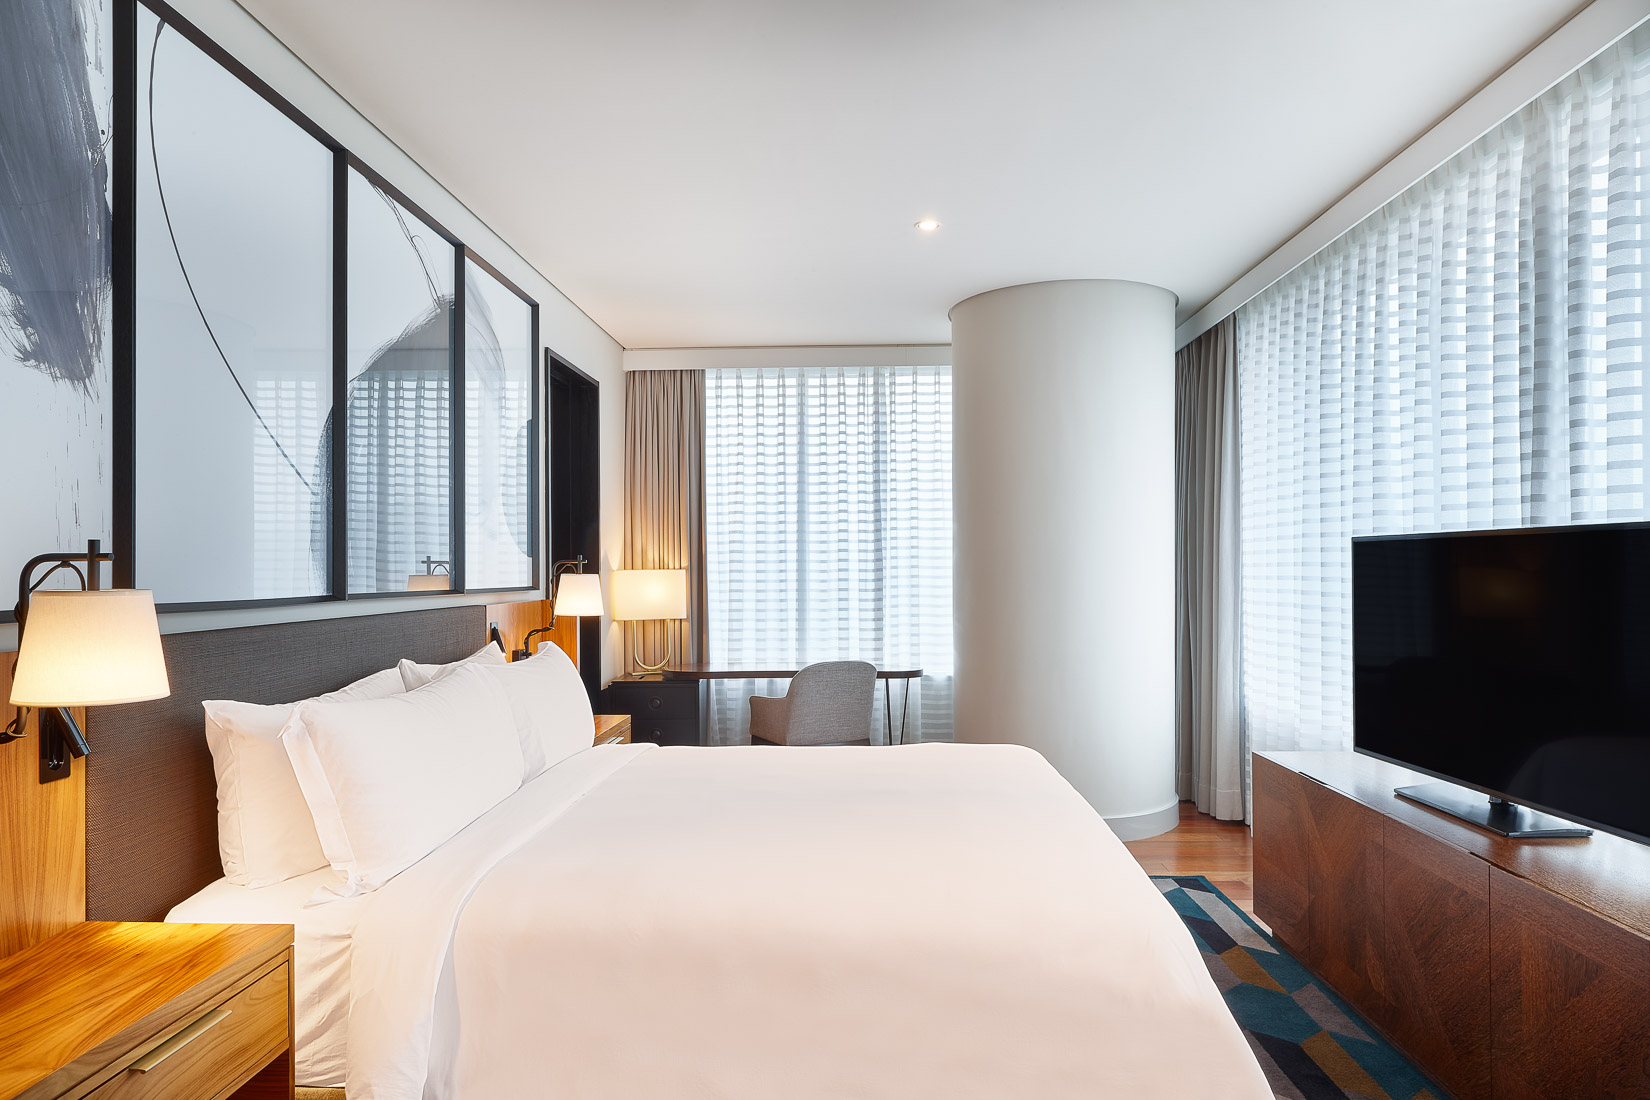 El JW Marriott hotel Sao Paulo debuta en la ciudad de manera consciente